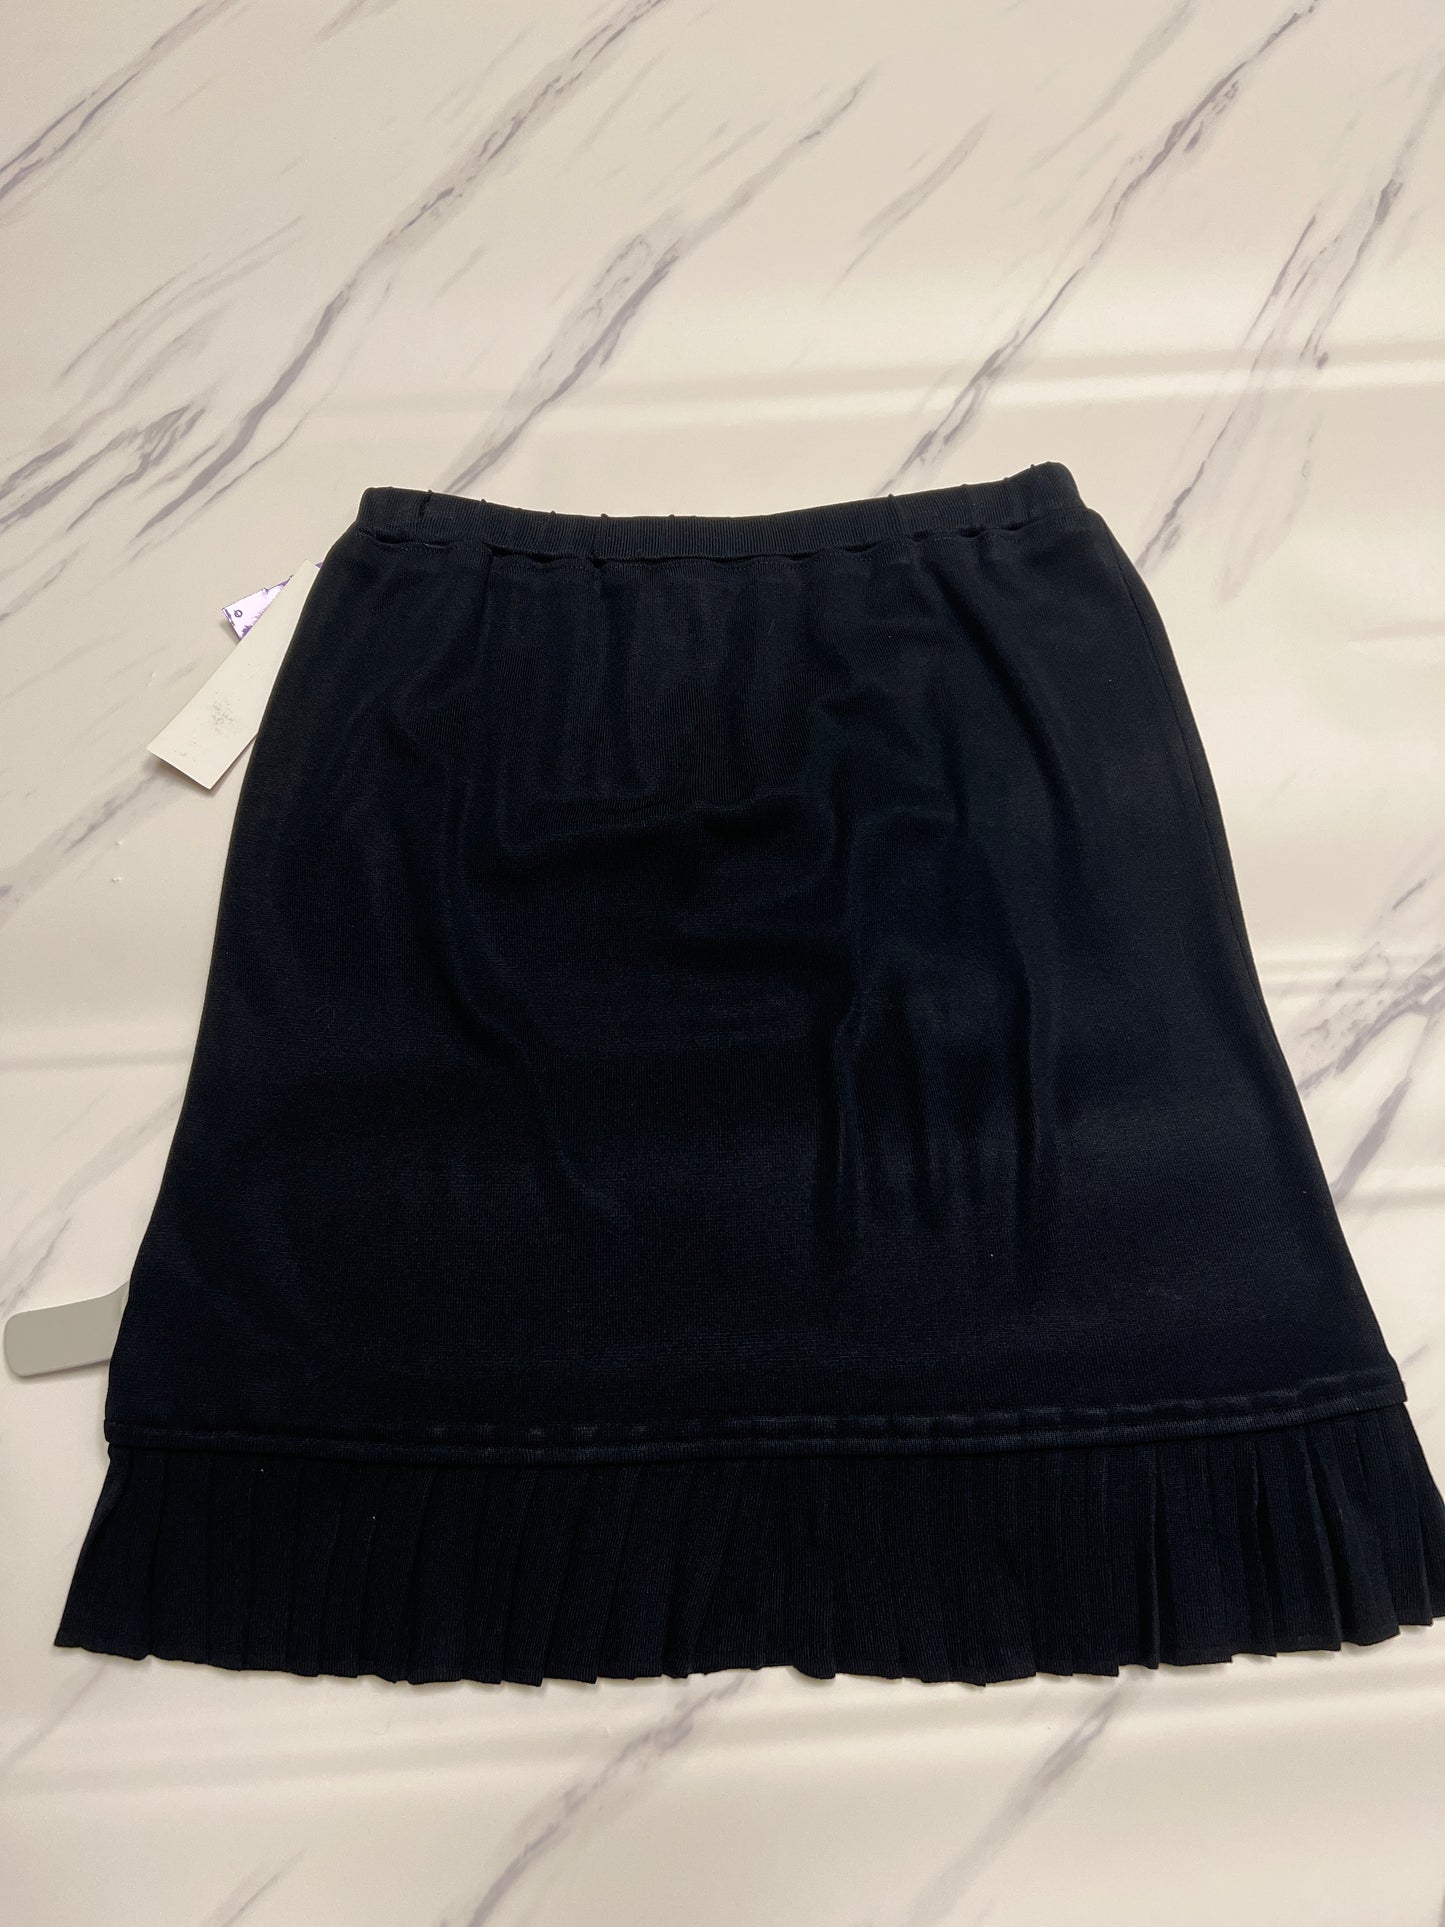 Skirt Midi By Ming Wang  Size: Xs